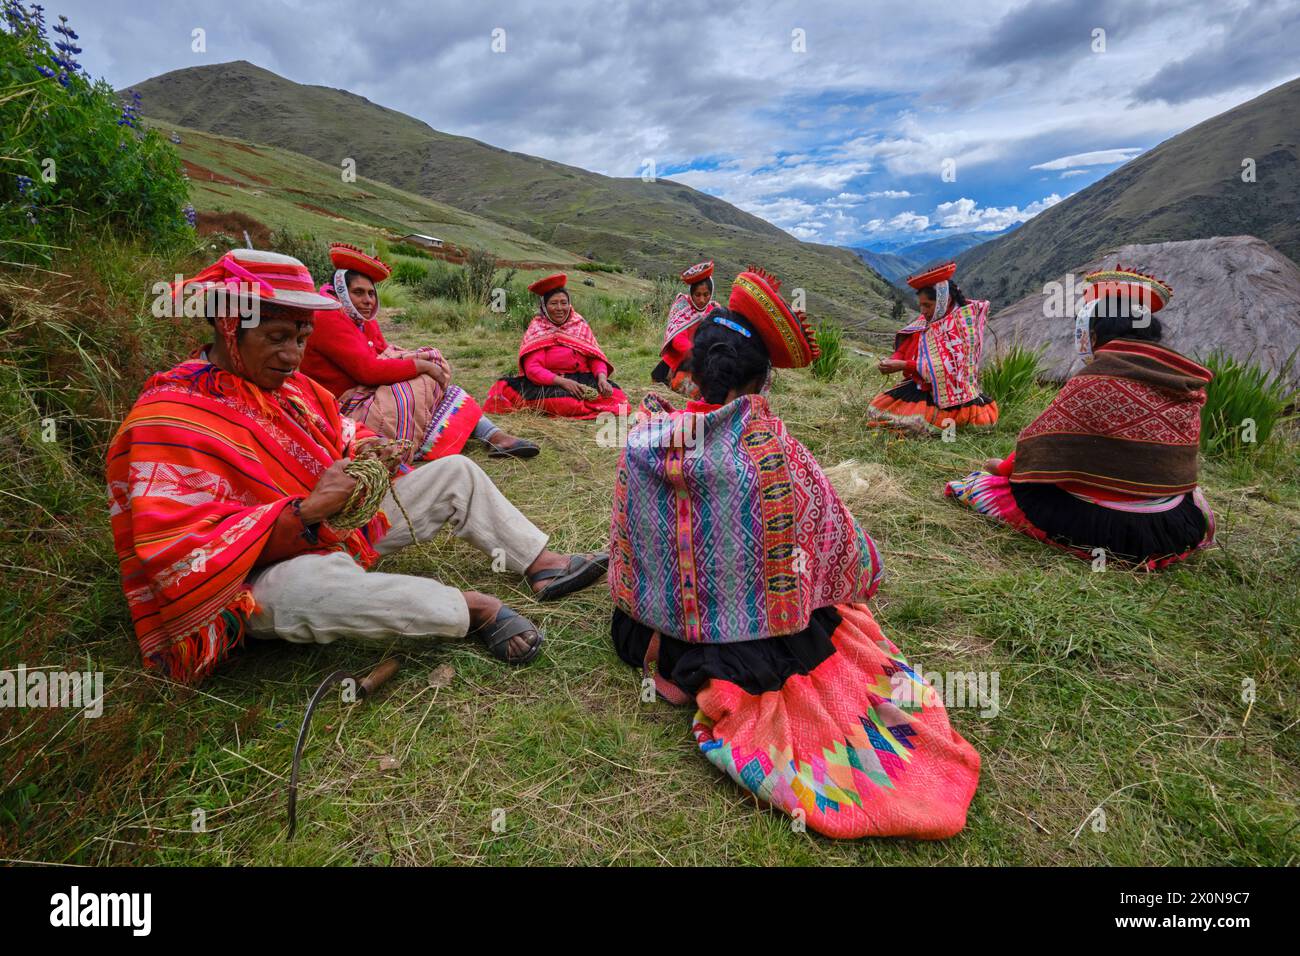 Peru, Provinz Cuzco, Heiliges Tal der Inkas, quechua Gemeinschaft der Anden, Frauen, die Strohseile weben Stockfoto